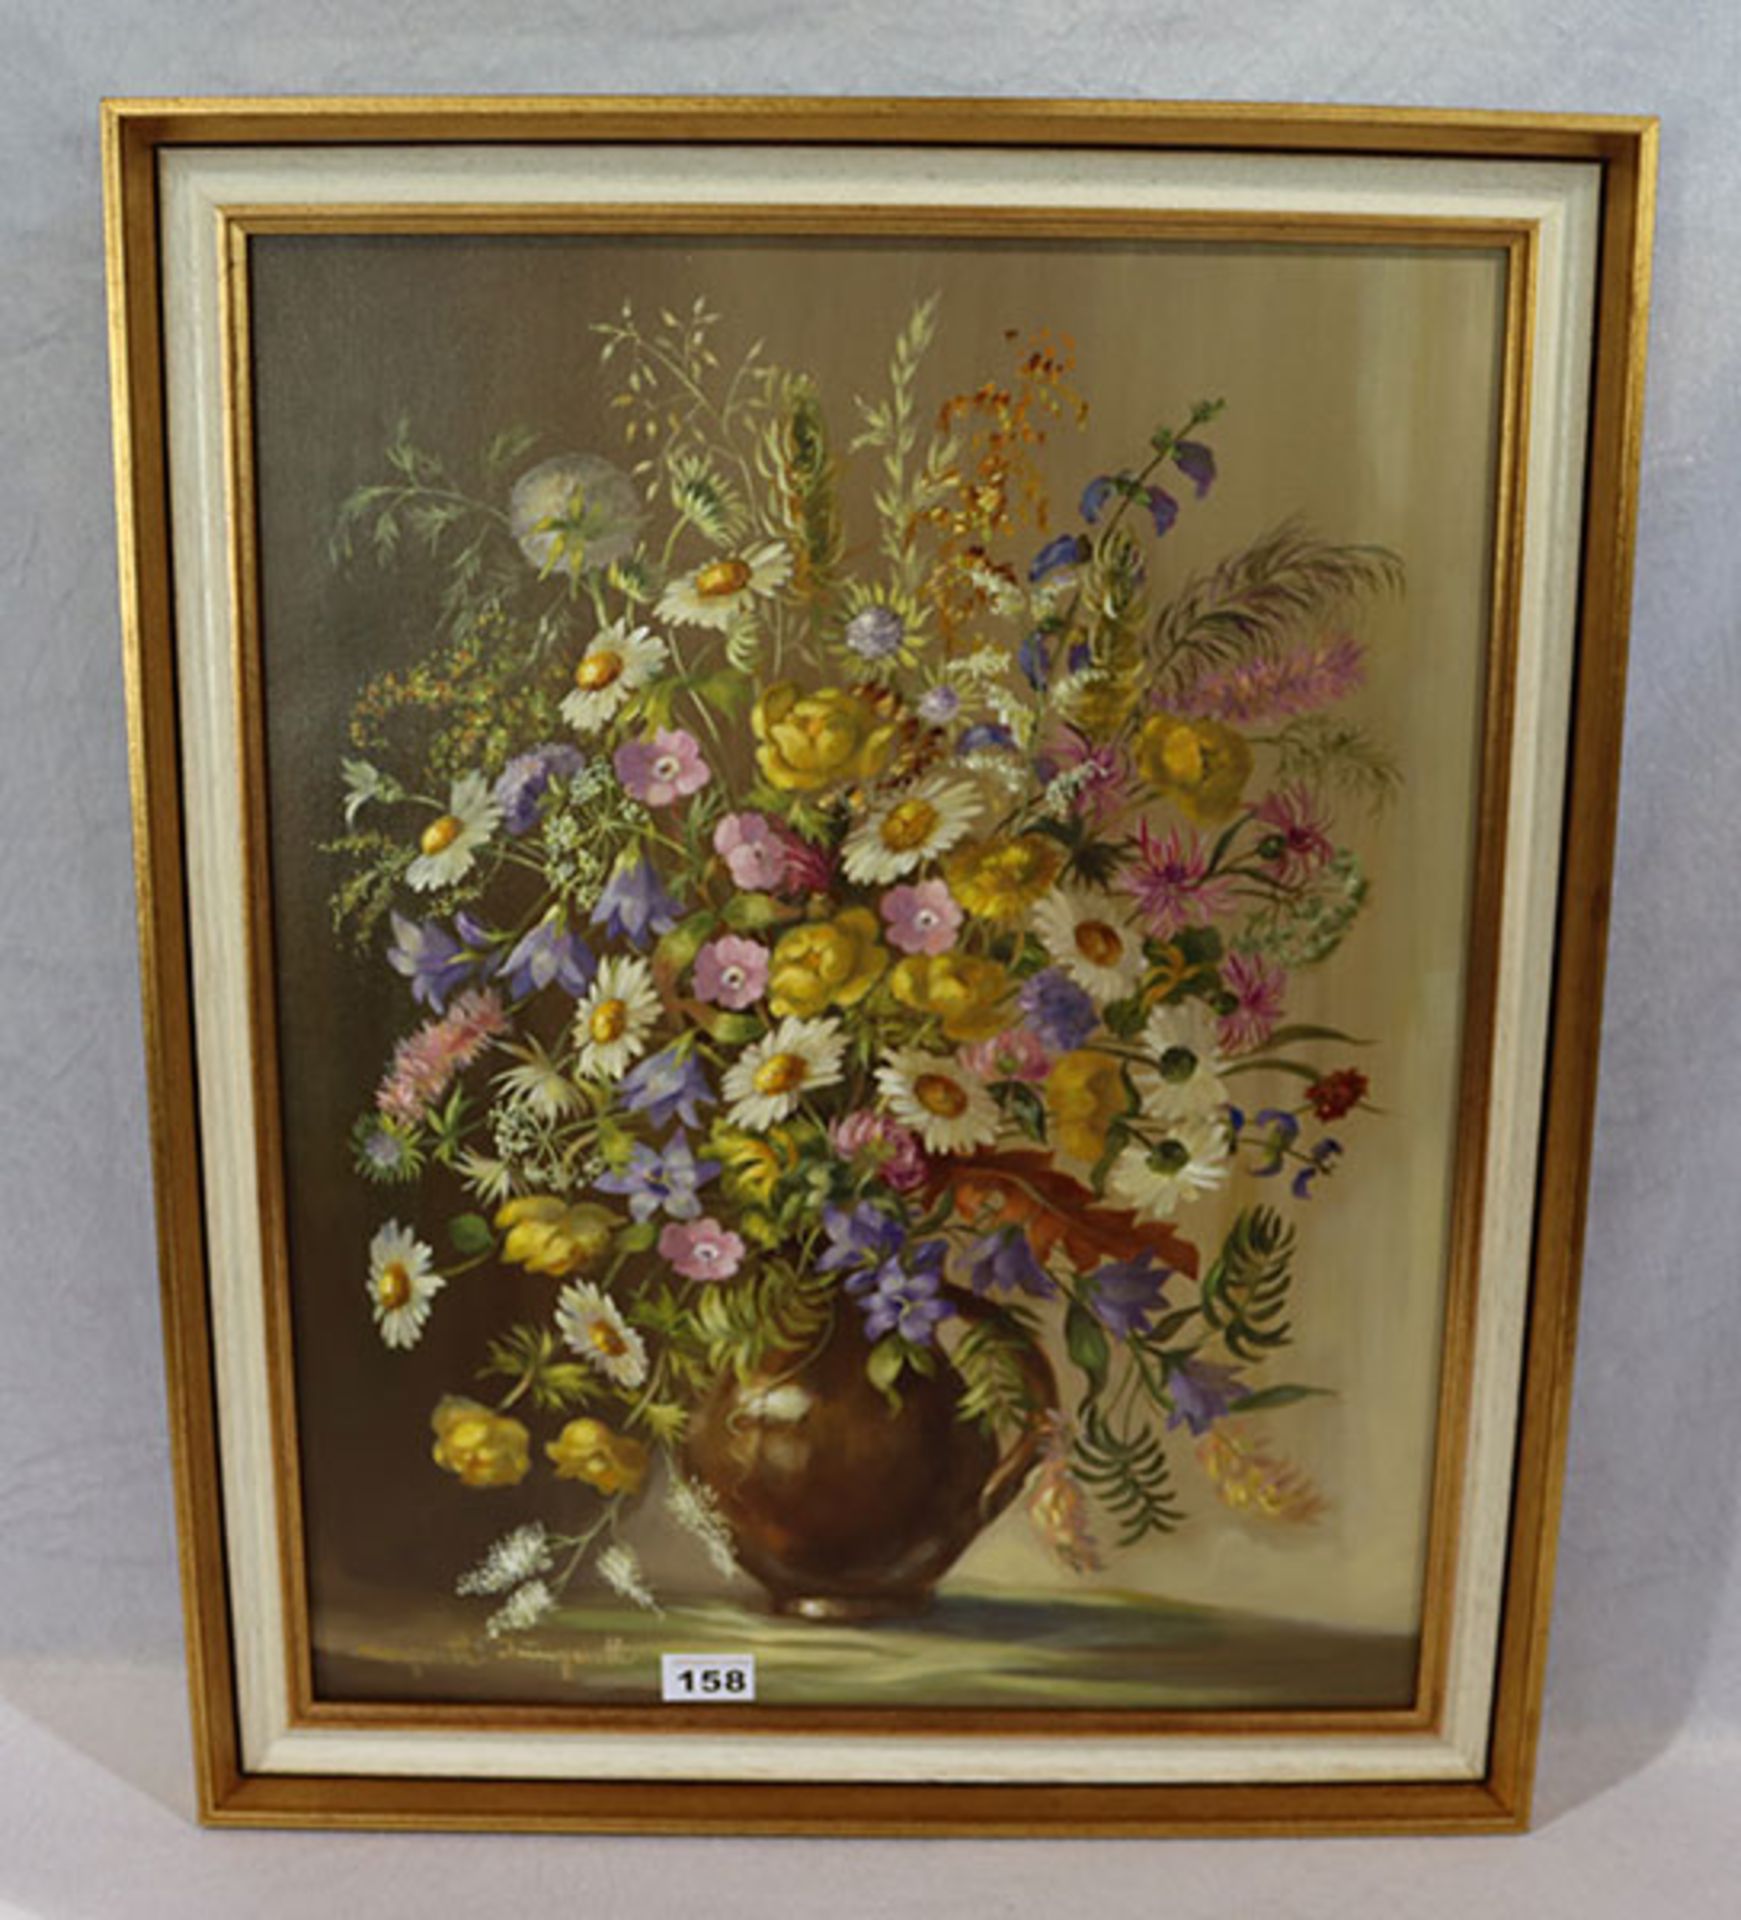 Gemälde ÖL/LW 'Sommerblumen in Vase', signiert Margarethe Jungwirth, gerahmt, incl. Rahmen, H 70